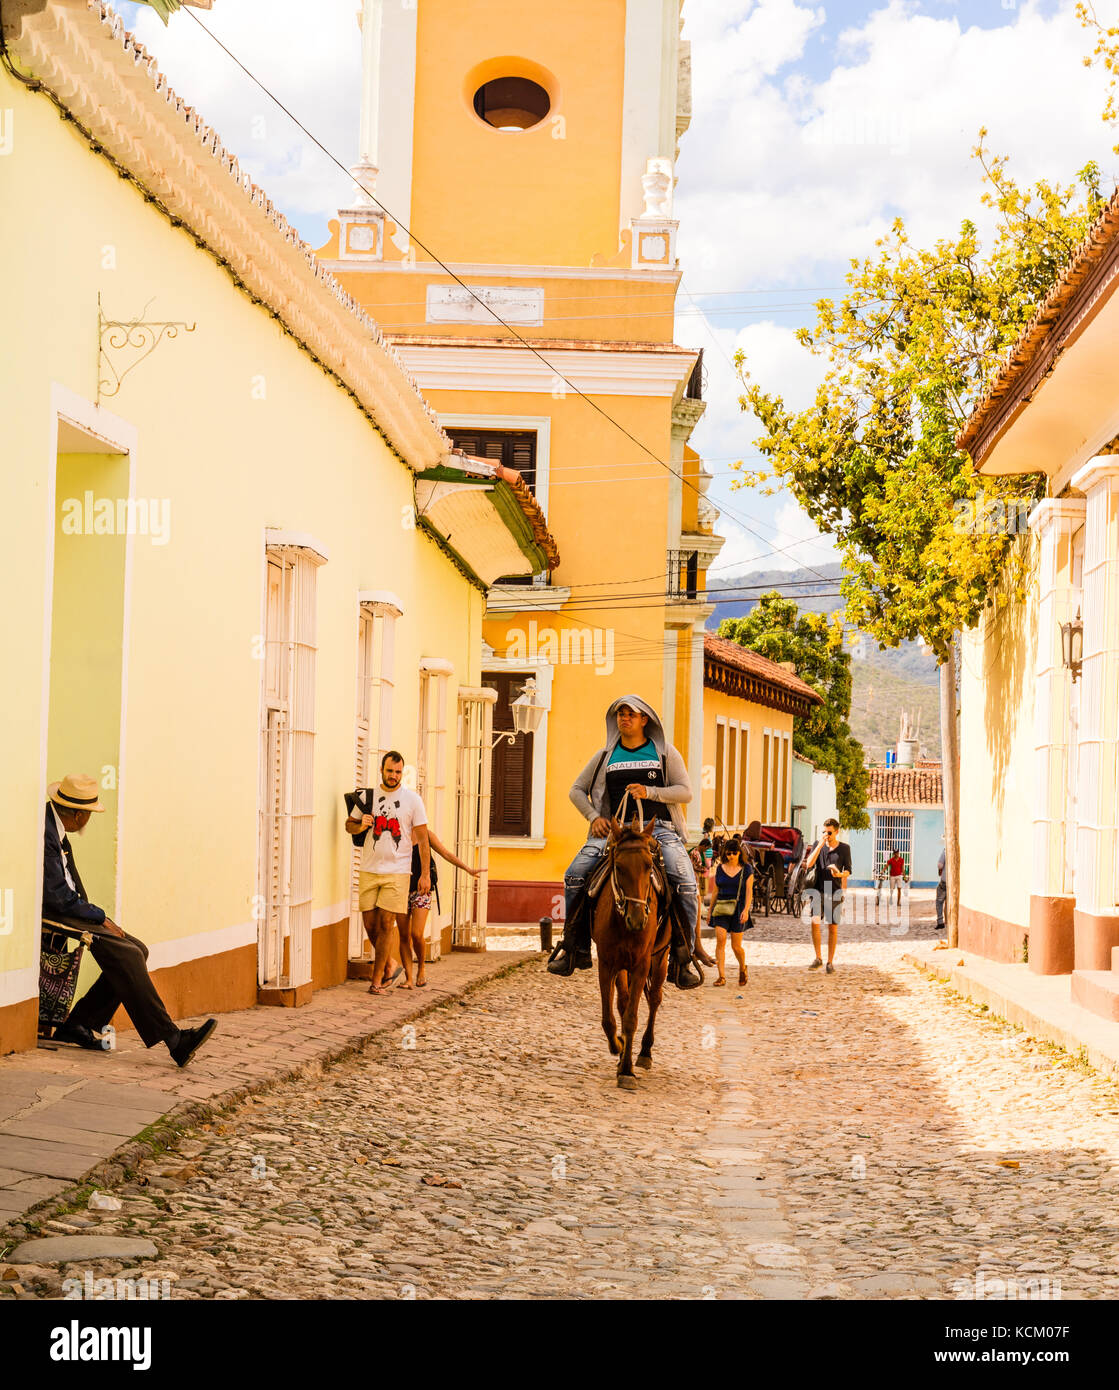 Kubanische Cowboy reitet Pferd Vergangenheit th brigtly Farbige l Häuser auf den gepflasterten Straßen von Trinidad, Kuba, Karibik Stockfoto